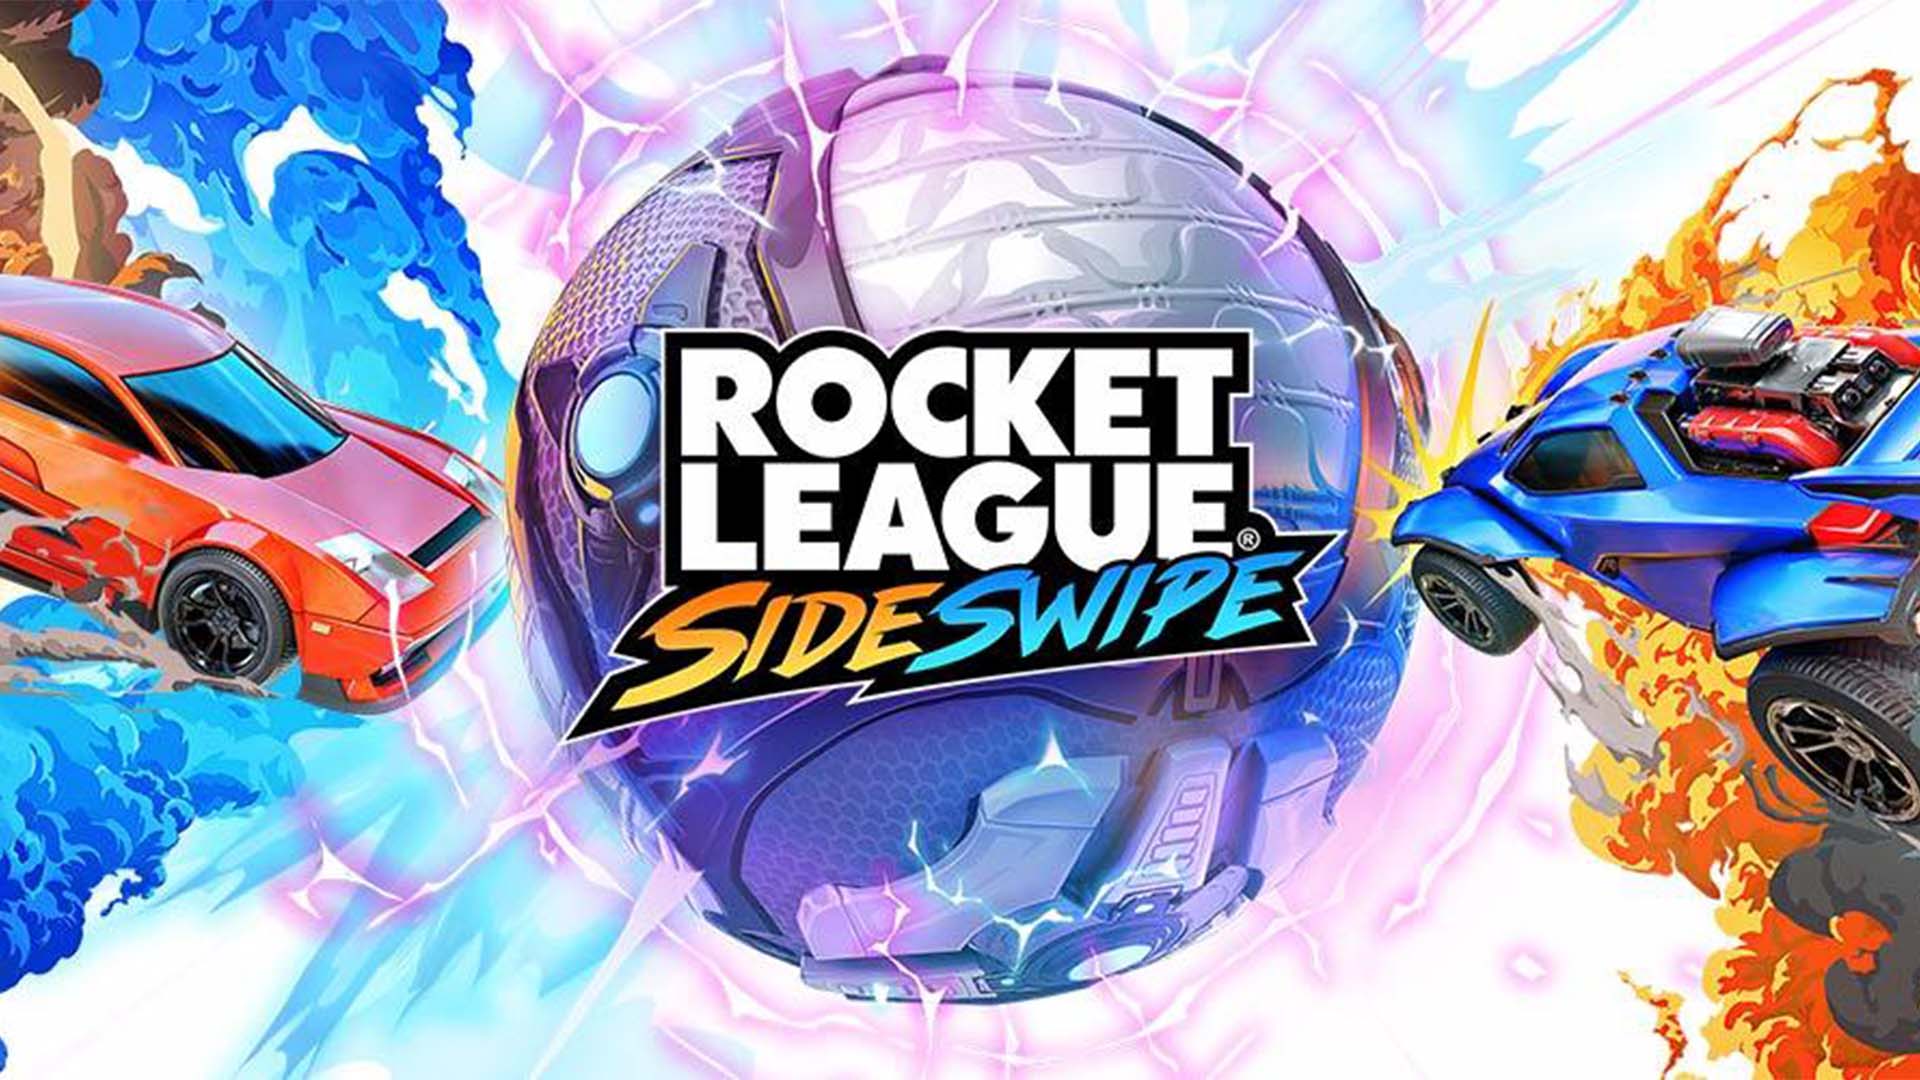 Rocket league side swipe تحميل